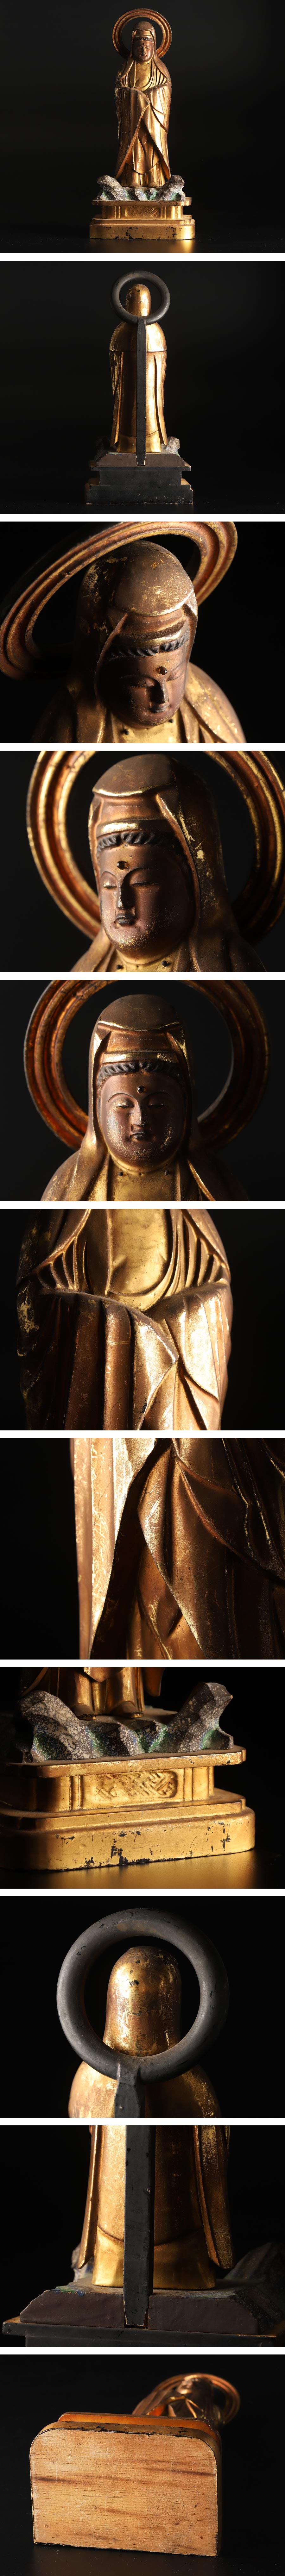 安心売買【琴》送料無料 仏教美術 時代木彫彩色塗金観音像 仏像 立像 KG506 仏像